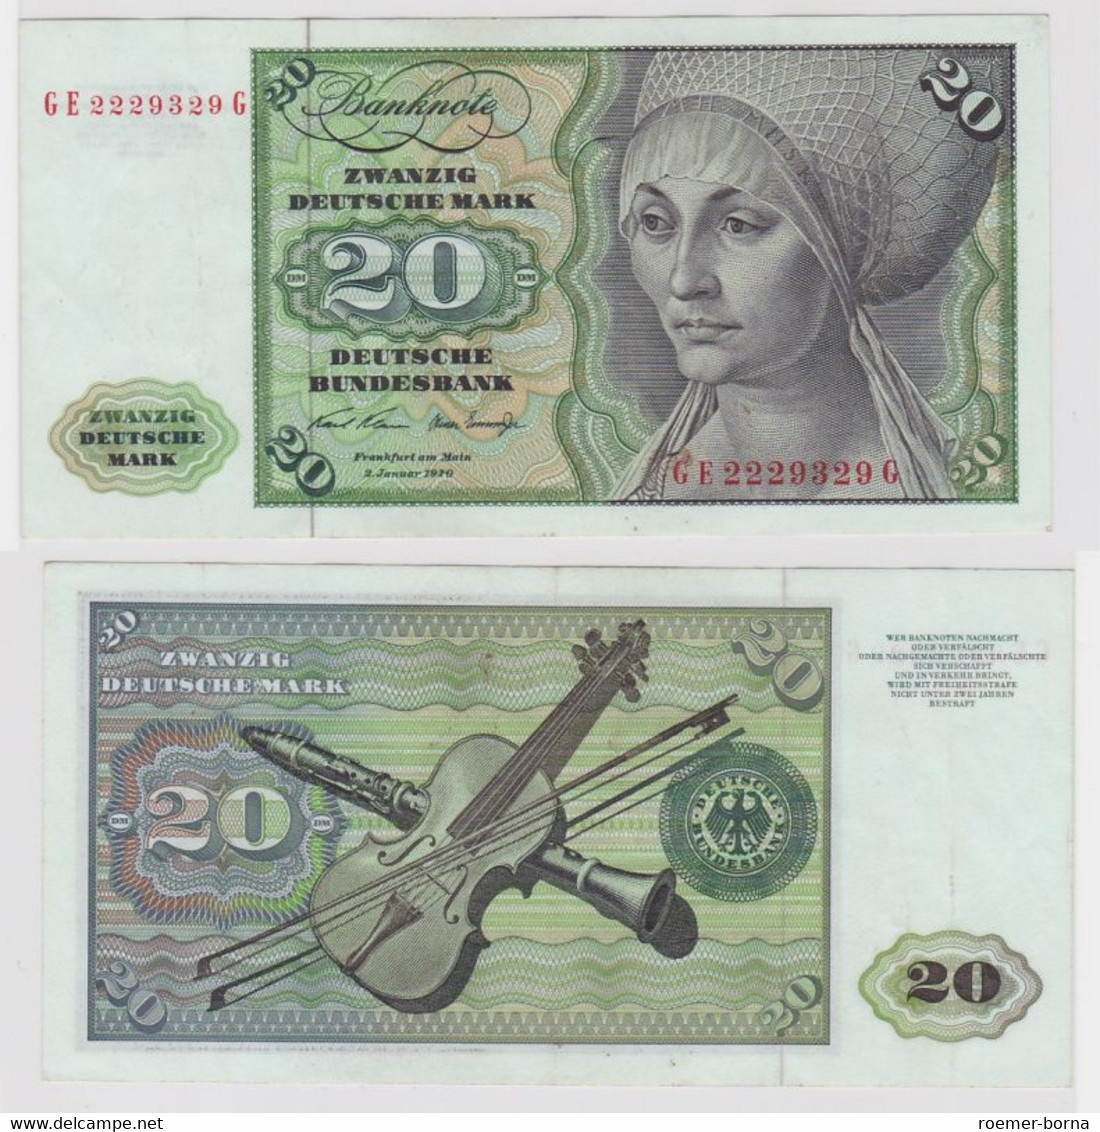 T114014 Banknote 20 DM Deutsche Mark Ro. 271b Schein 2.Jan. 1970 KN GE 2229329 G - 20 DM